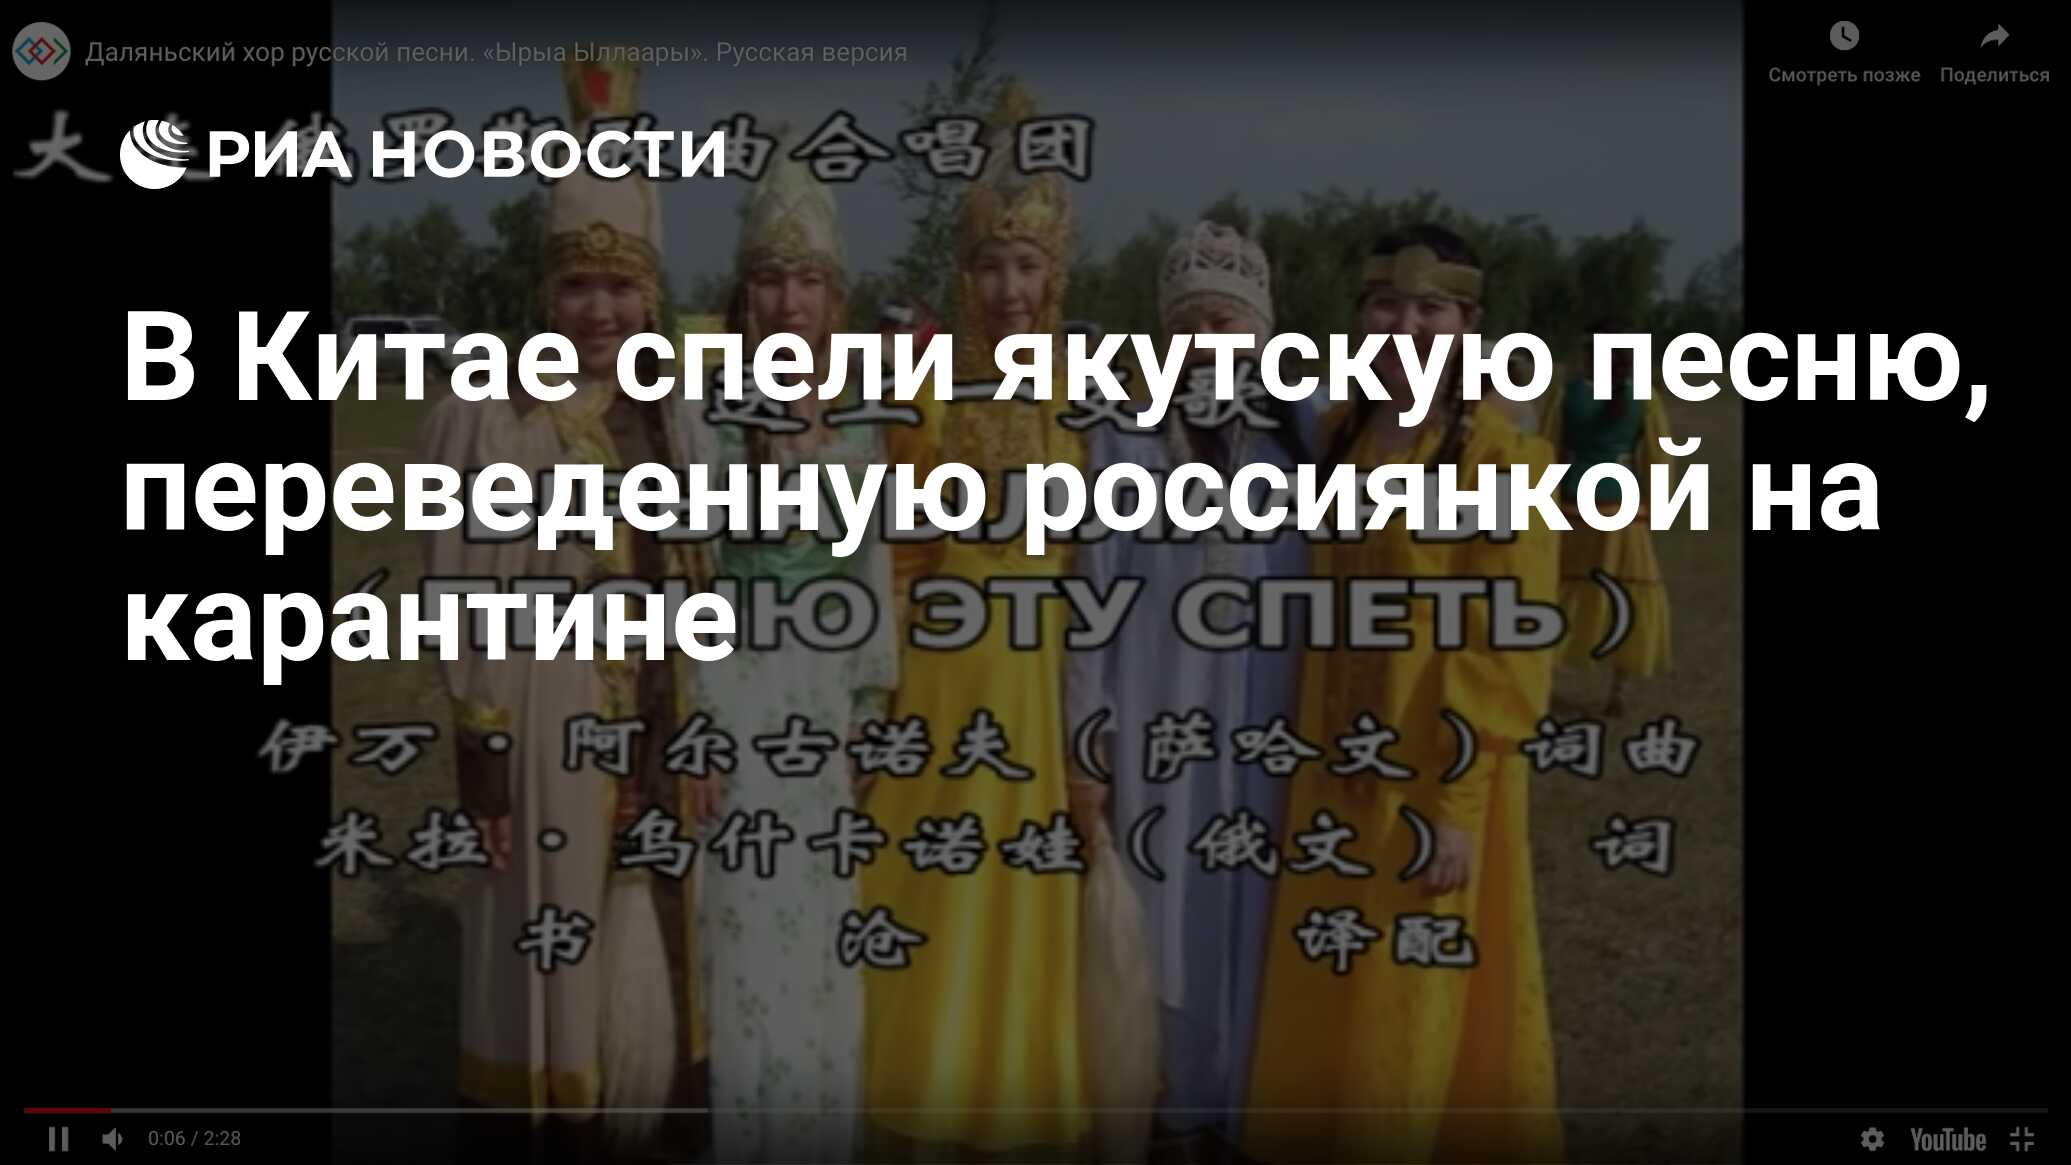 Спой китайскую песню. Группа из Якутии спела на вымирающем языке.